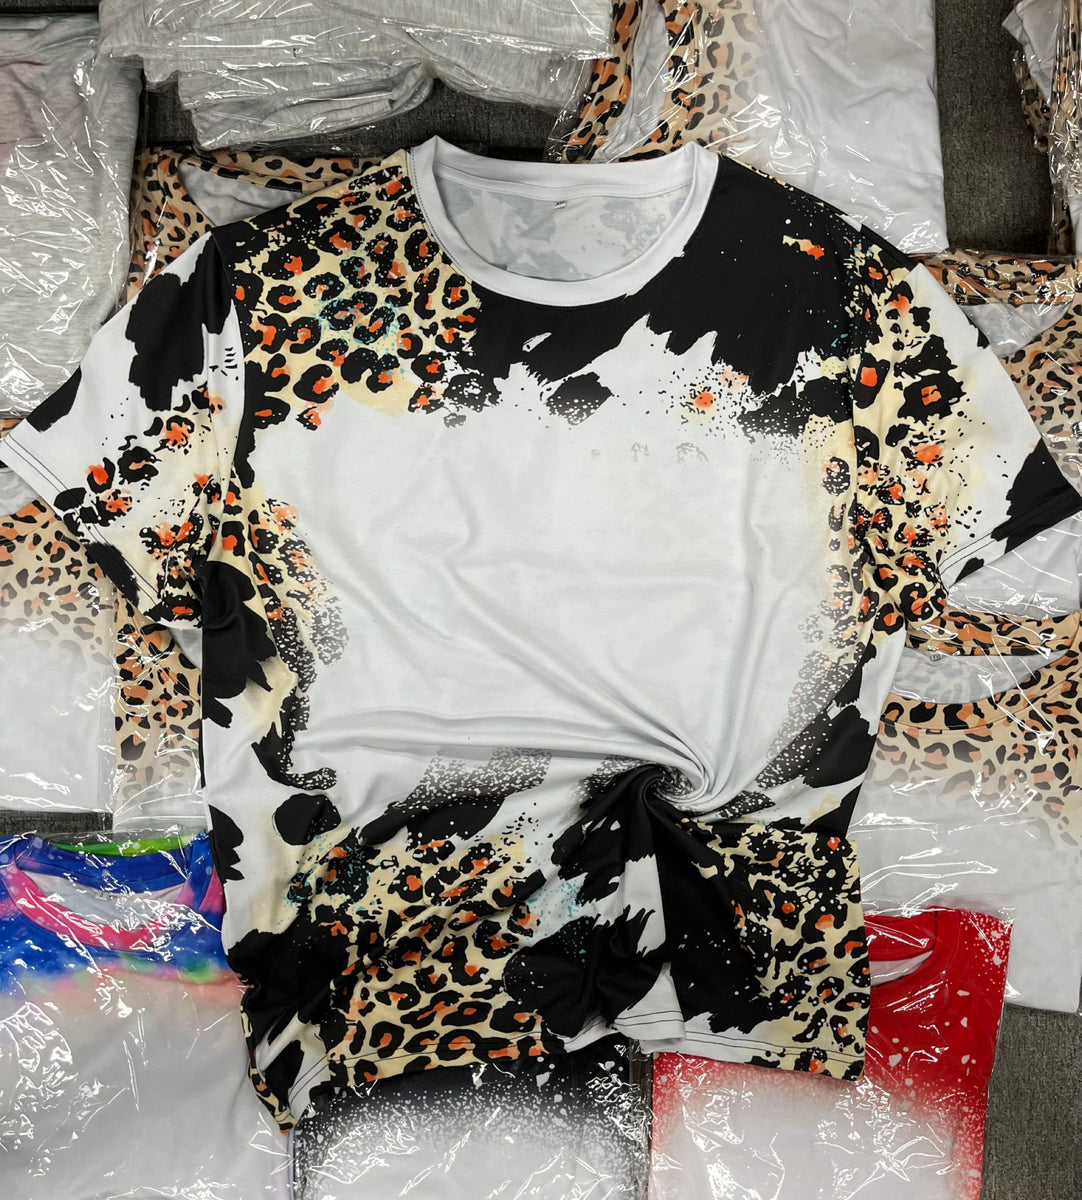 Next Play Tees Atlanta Braves Cheetah Leopard Baseball Logo Bleached Sublimated T-Shirt Small